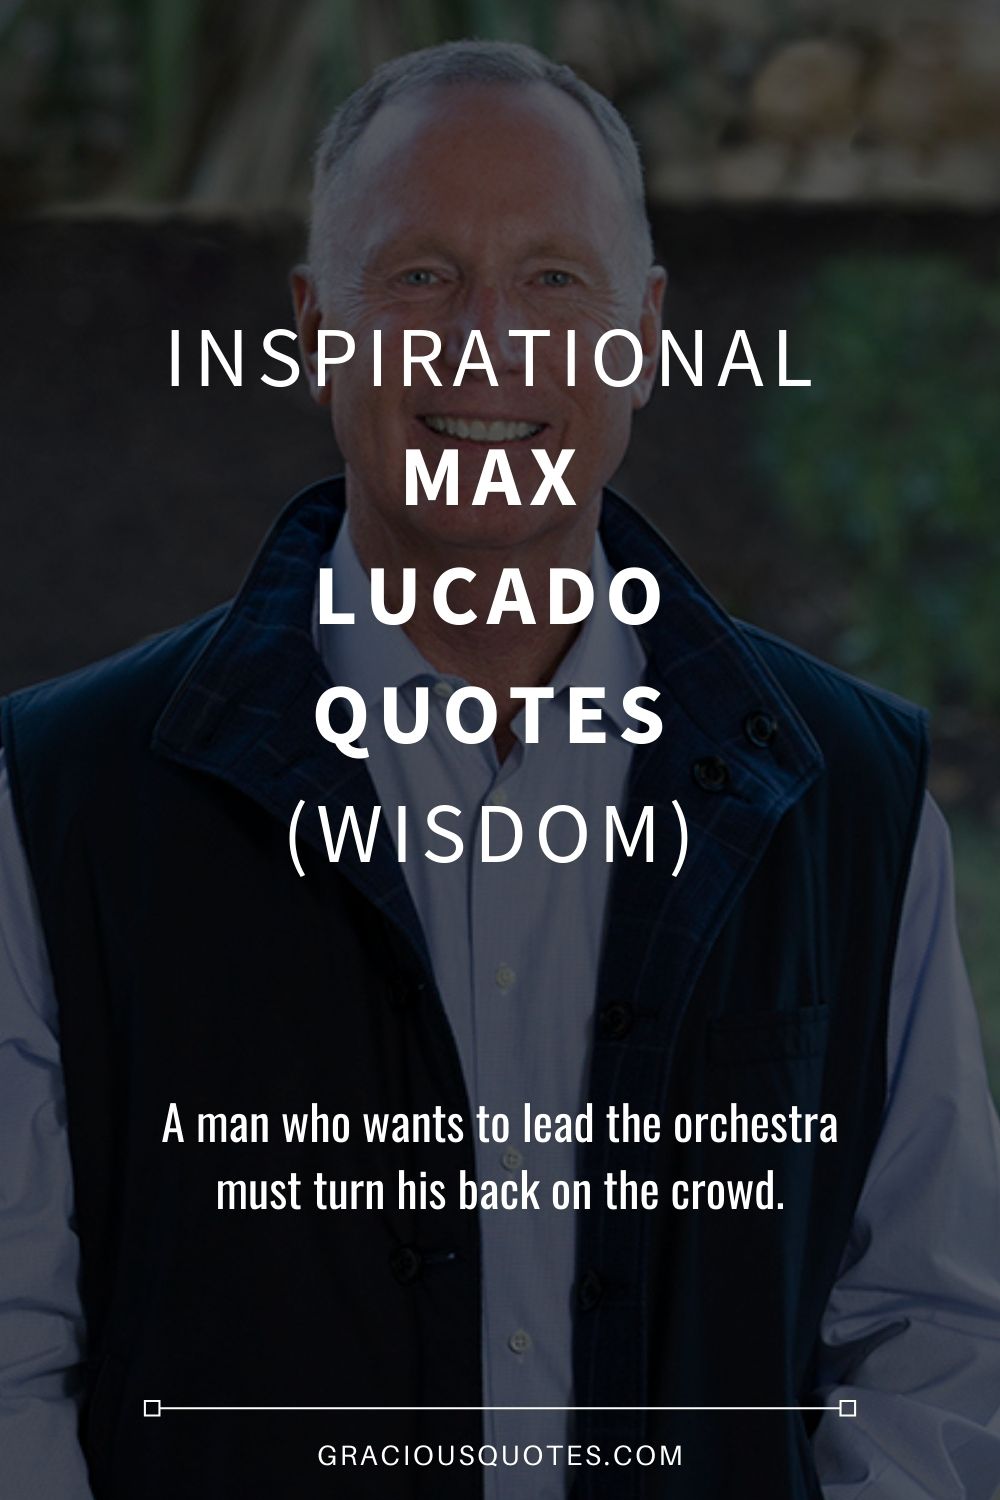 Inspirational Max Lucado Quotes (WISDOM) - Gracious Quotes